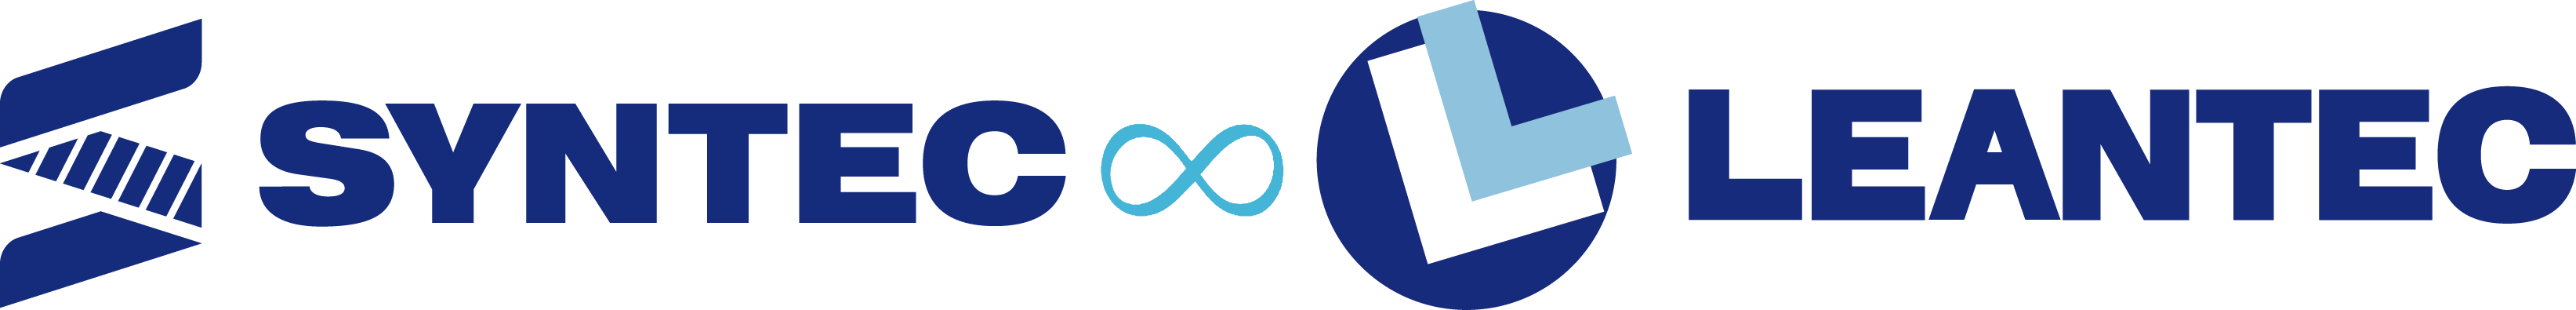 SYNTEC TECHNOLOGY logo